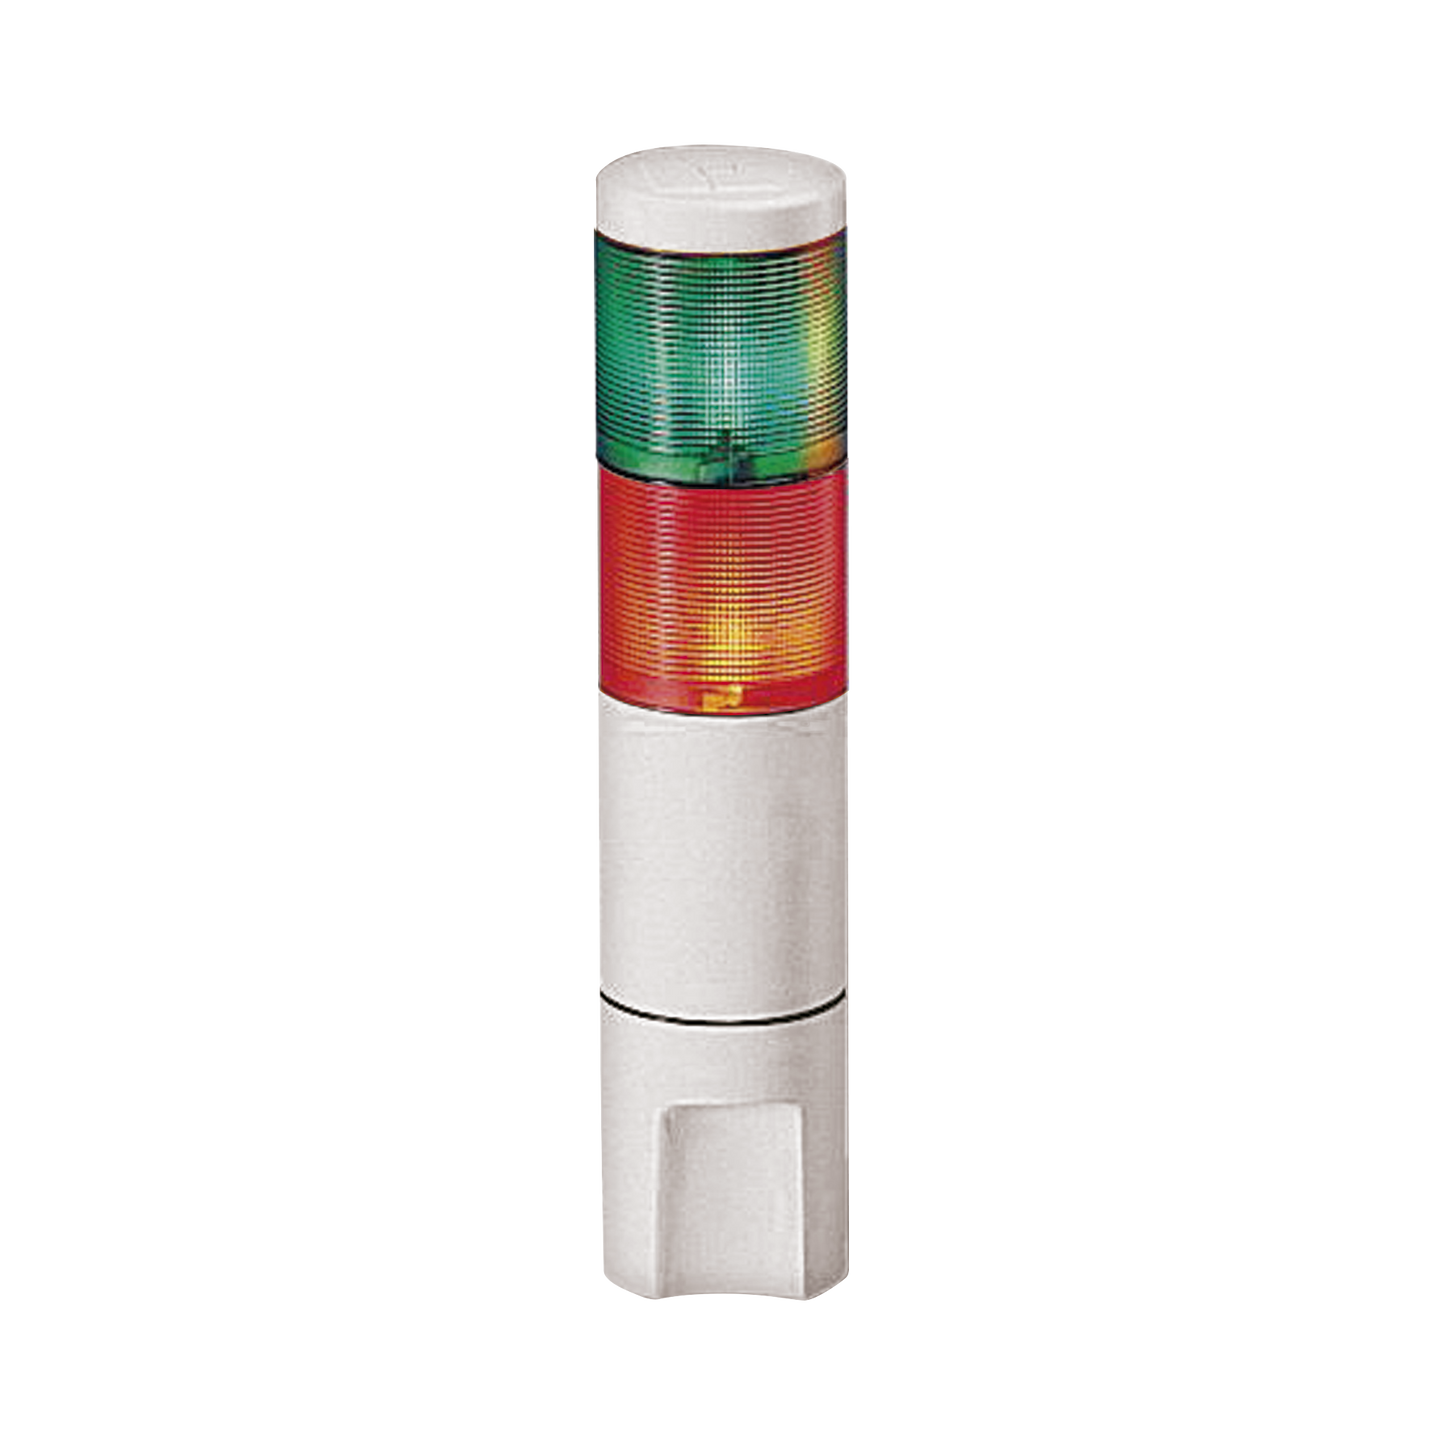 Indicador de estado LED MicroStat, 2 niveles, UL y cUL, 120Vca, verde, rojo